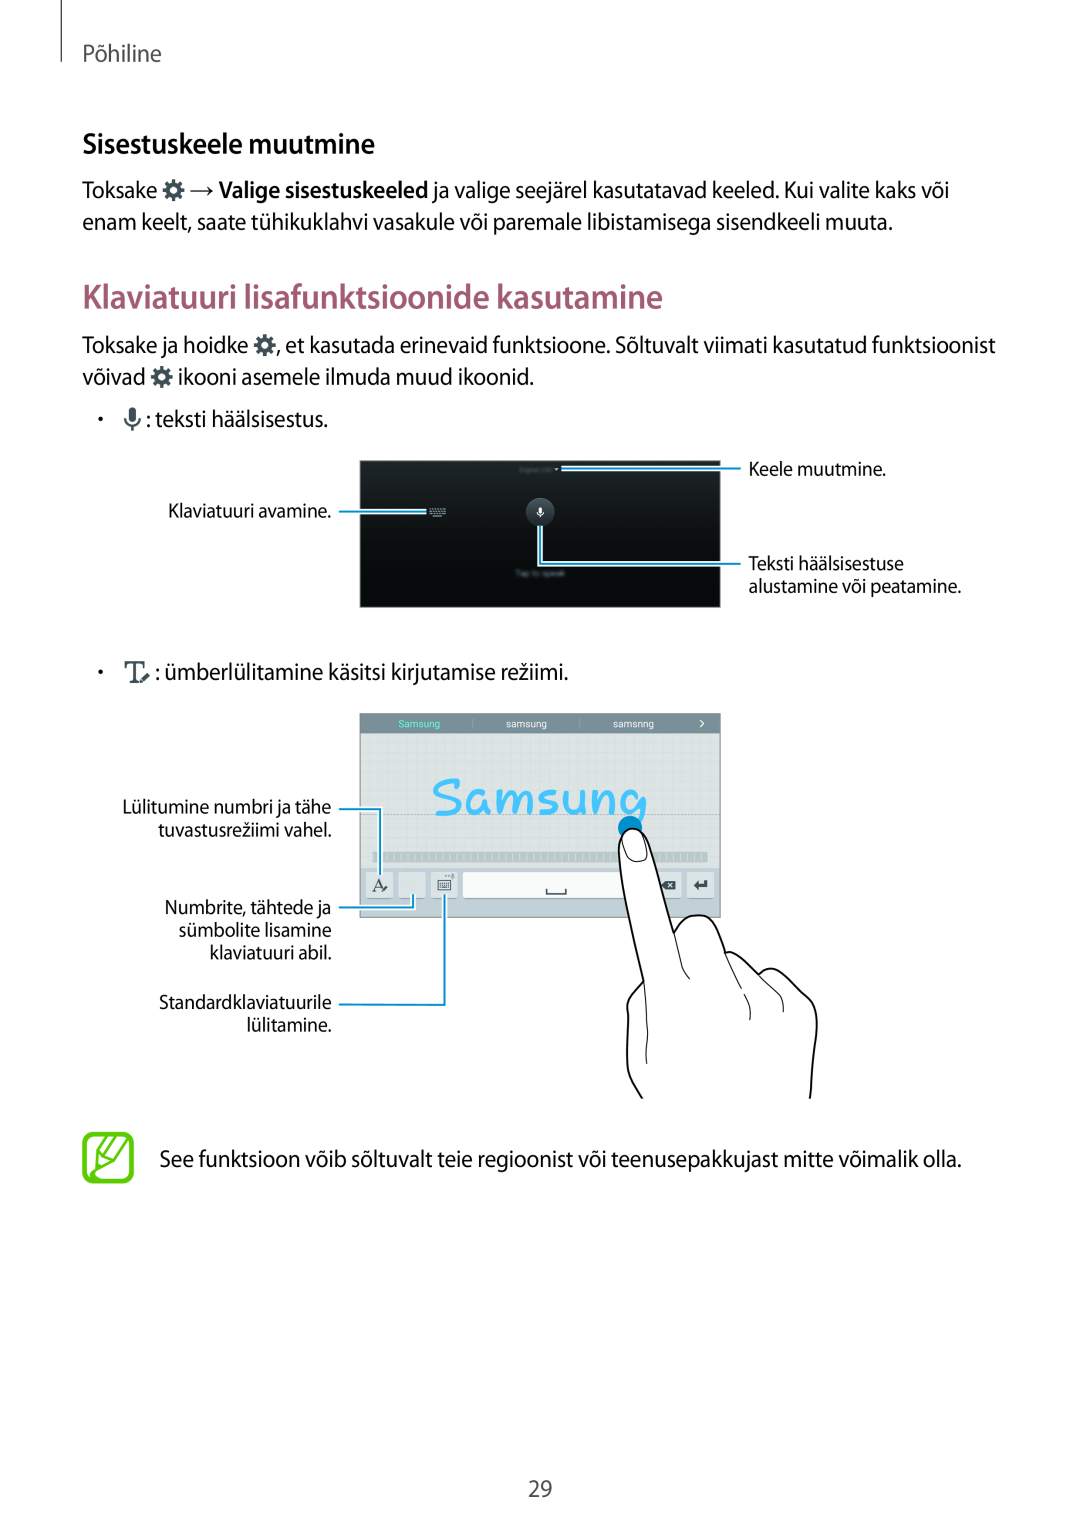 Samsung SM-T700NTSASEB, SM-T700NZWASEB manual Klaviatuuri lisafunktsioonide kasutamine, Sisestuskeele muutmine, Põhiline 